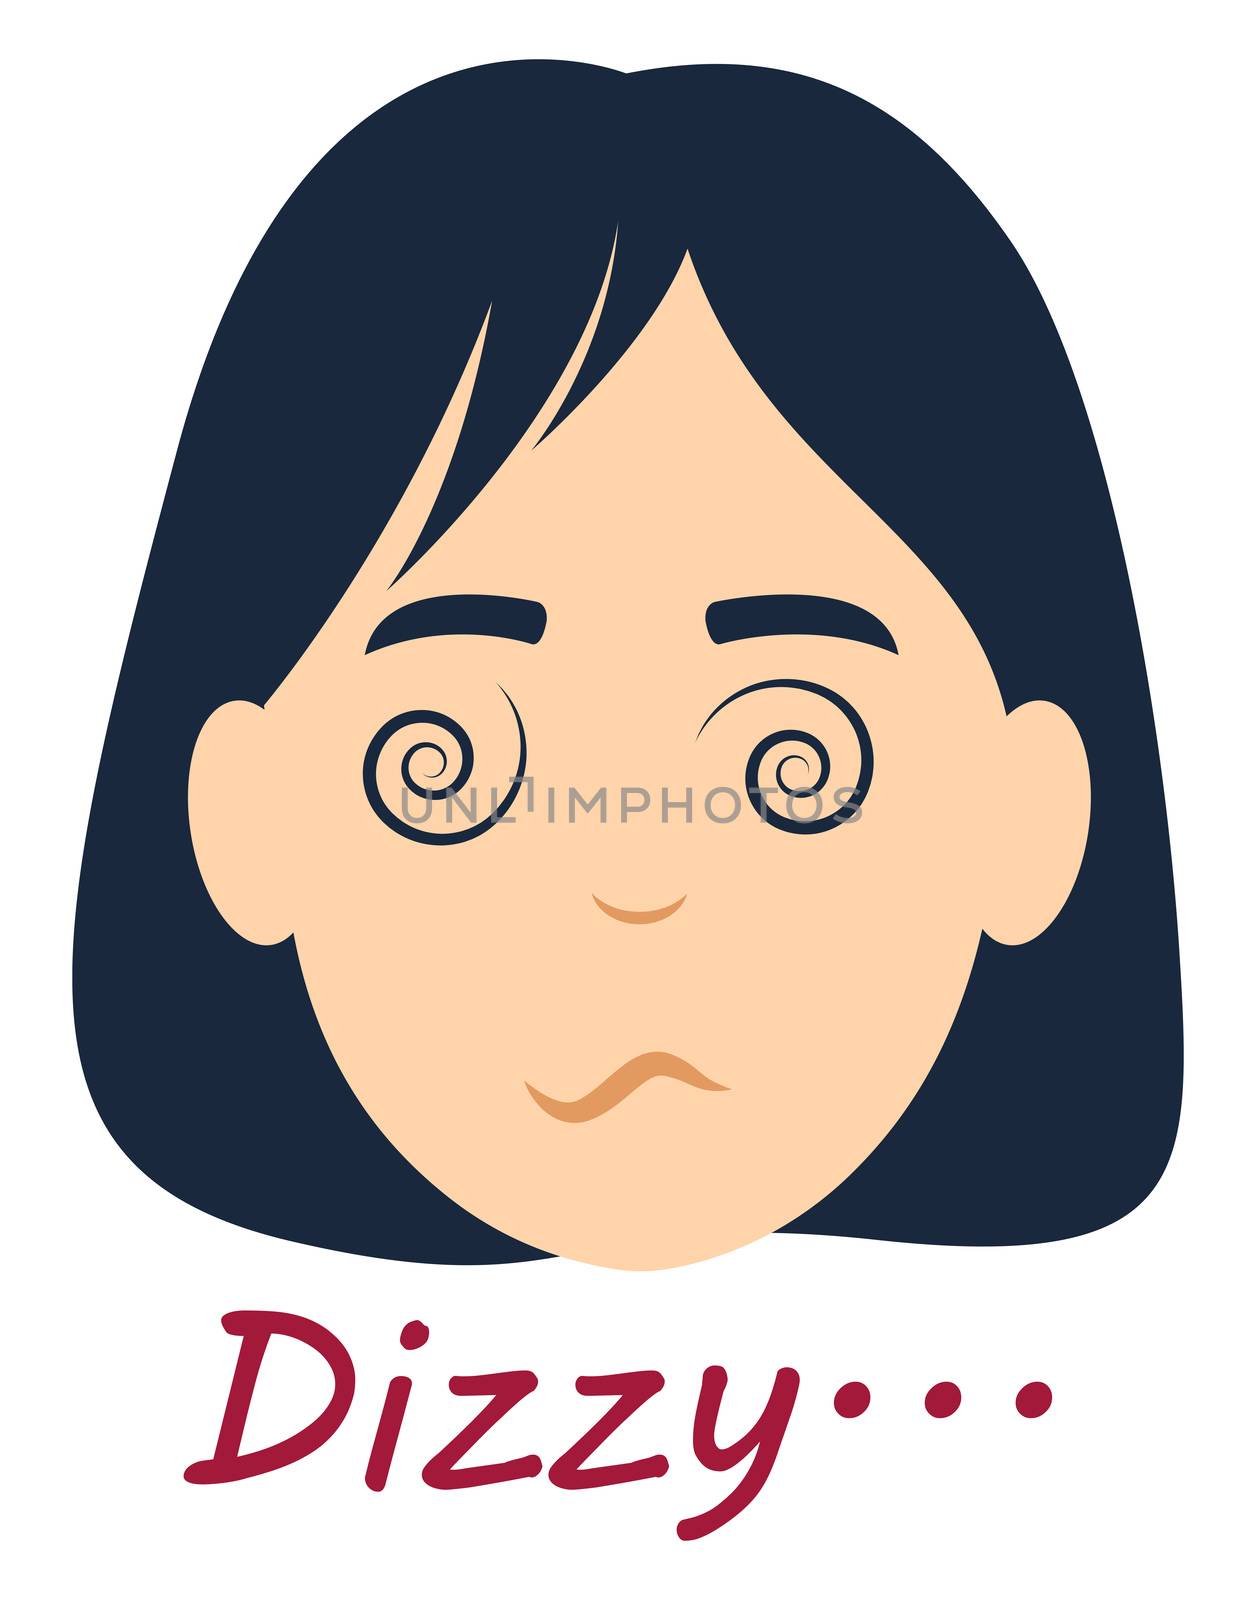 Dizzy girl, illustration, vector on white background by Morphart